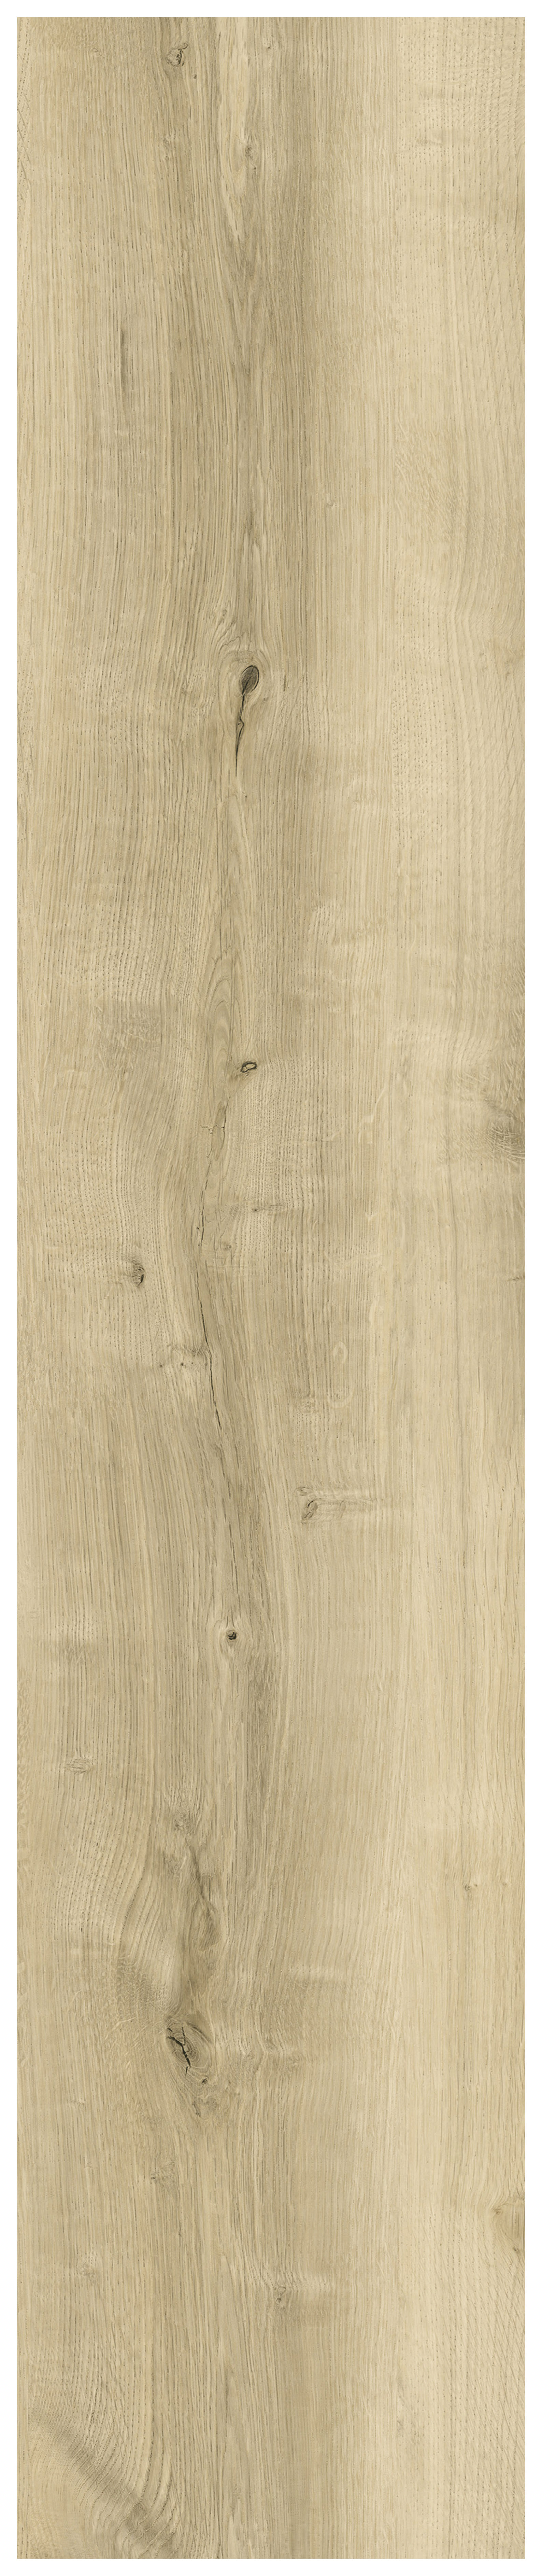 Balmoral Natural Oak Herringbone SPC Flooring with Integrated